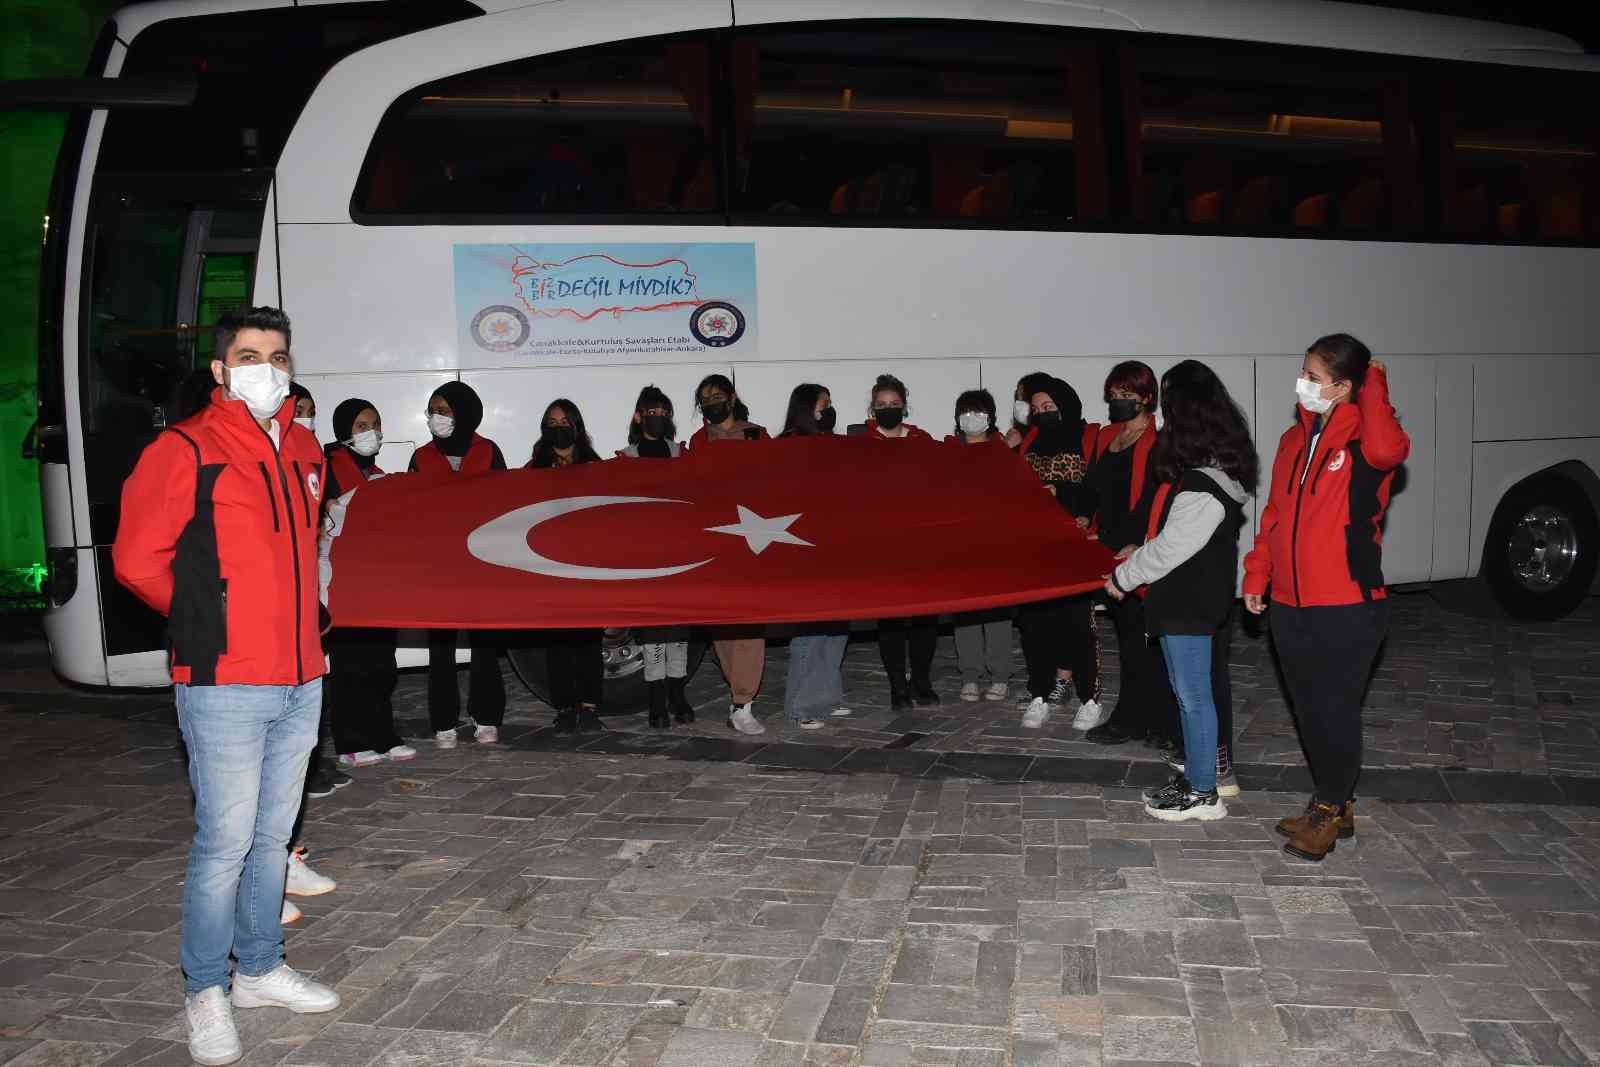 İzmirli 20 öğrenci 4 günlük gezi için yola çıktı #izmir